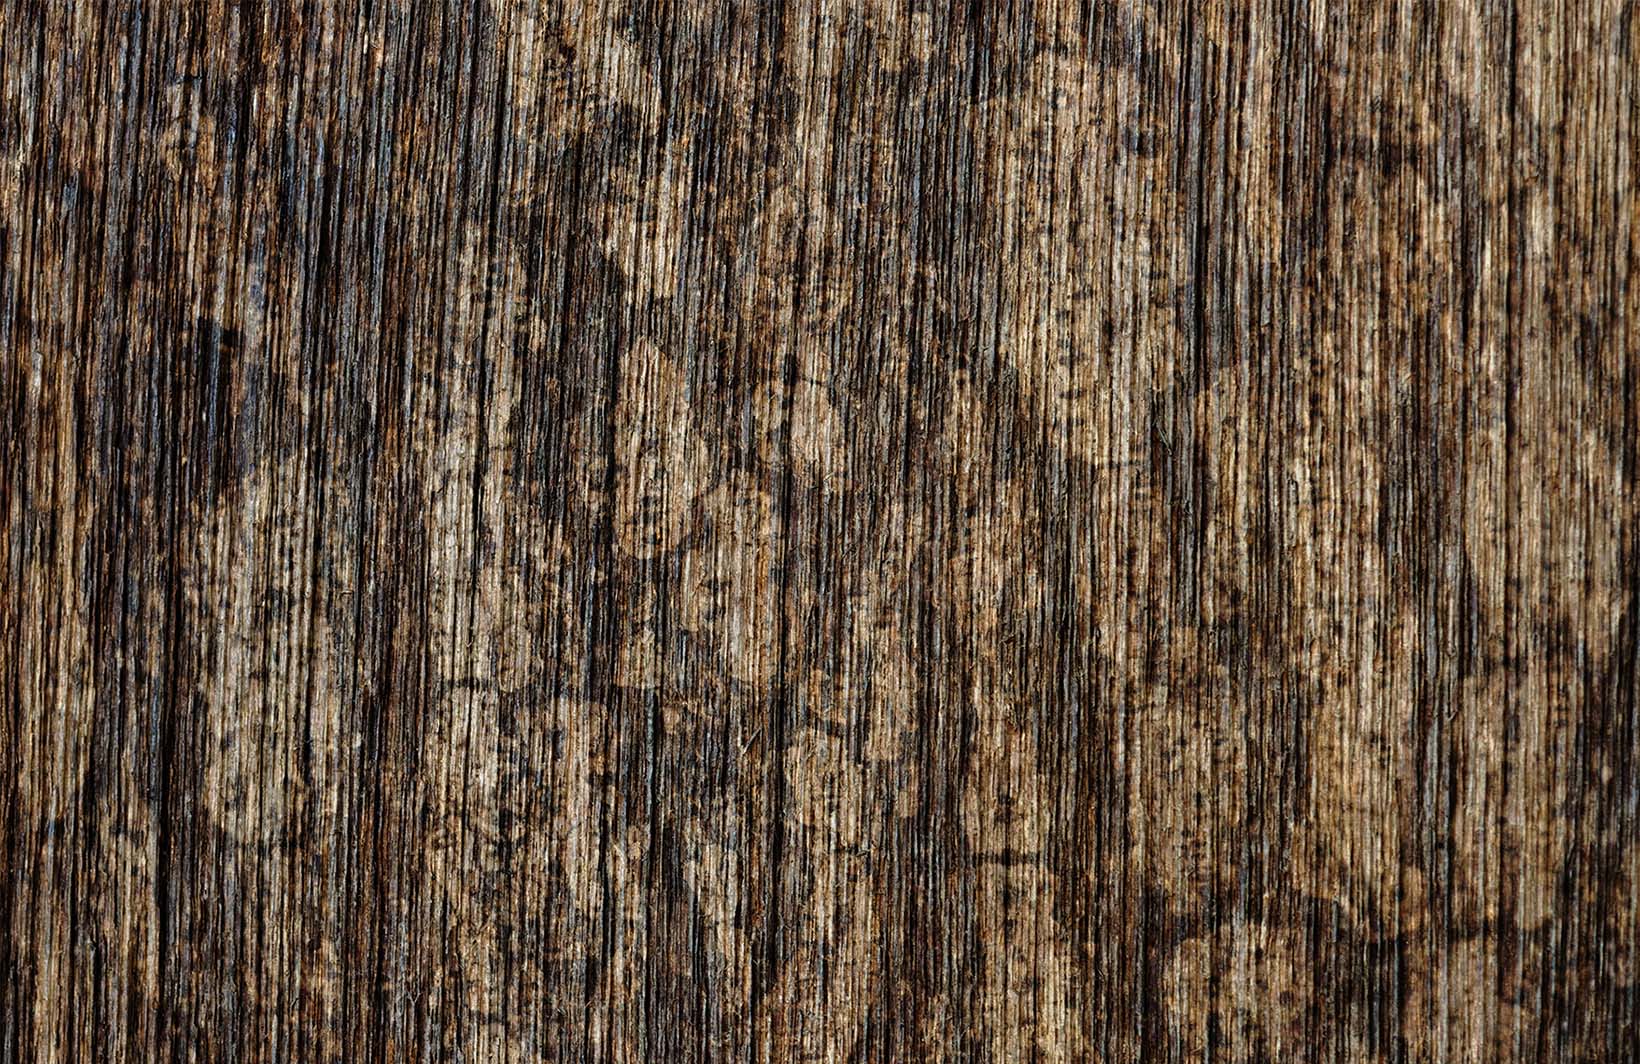 Теплые фотообои с деревянной фактурой для уютной стены Узоры на Стене